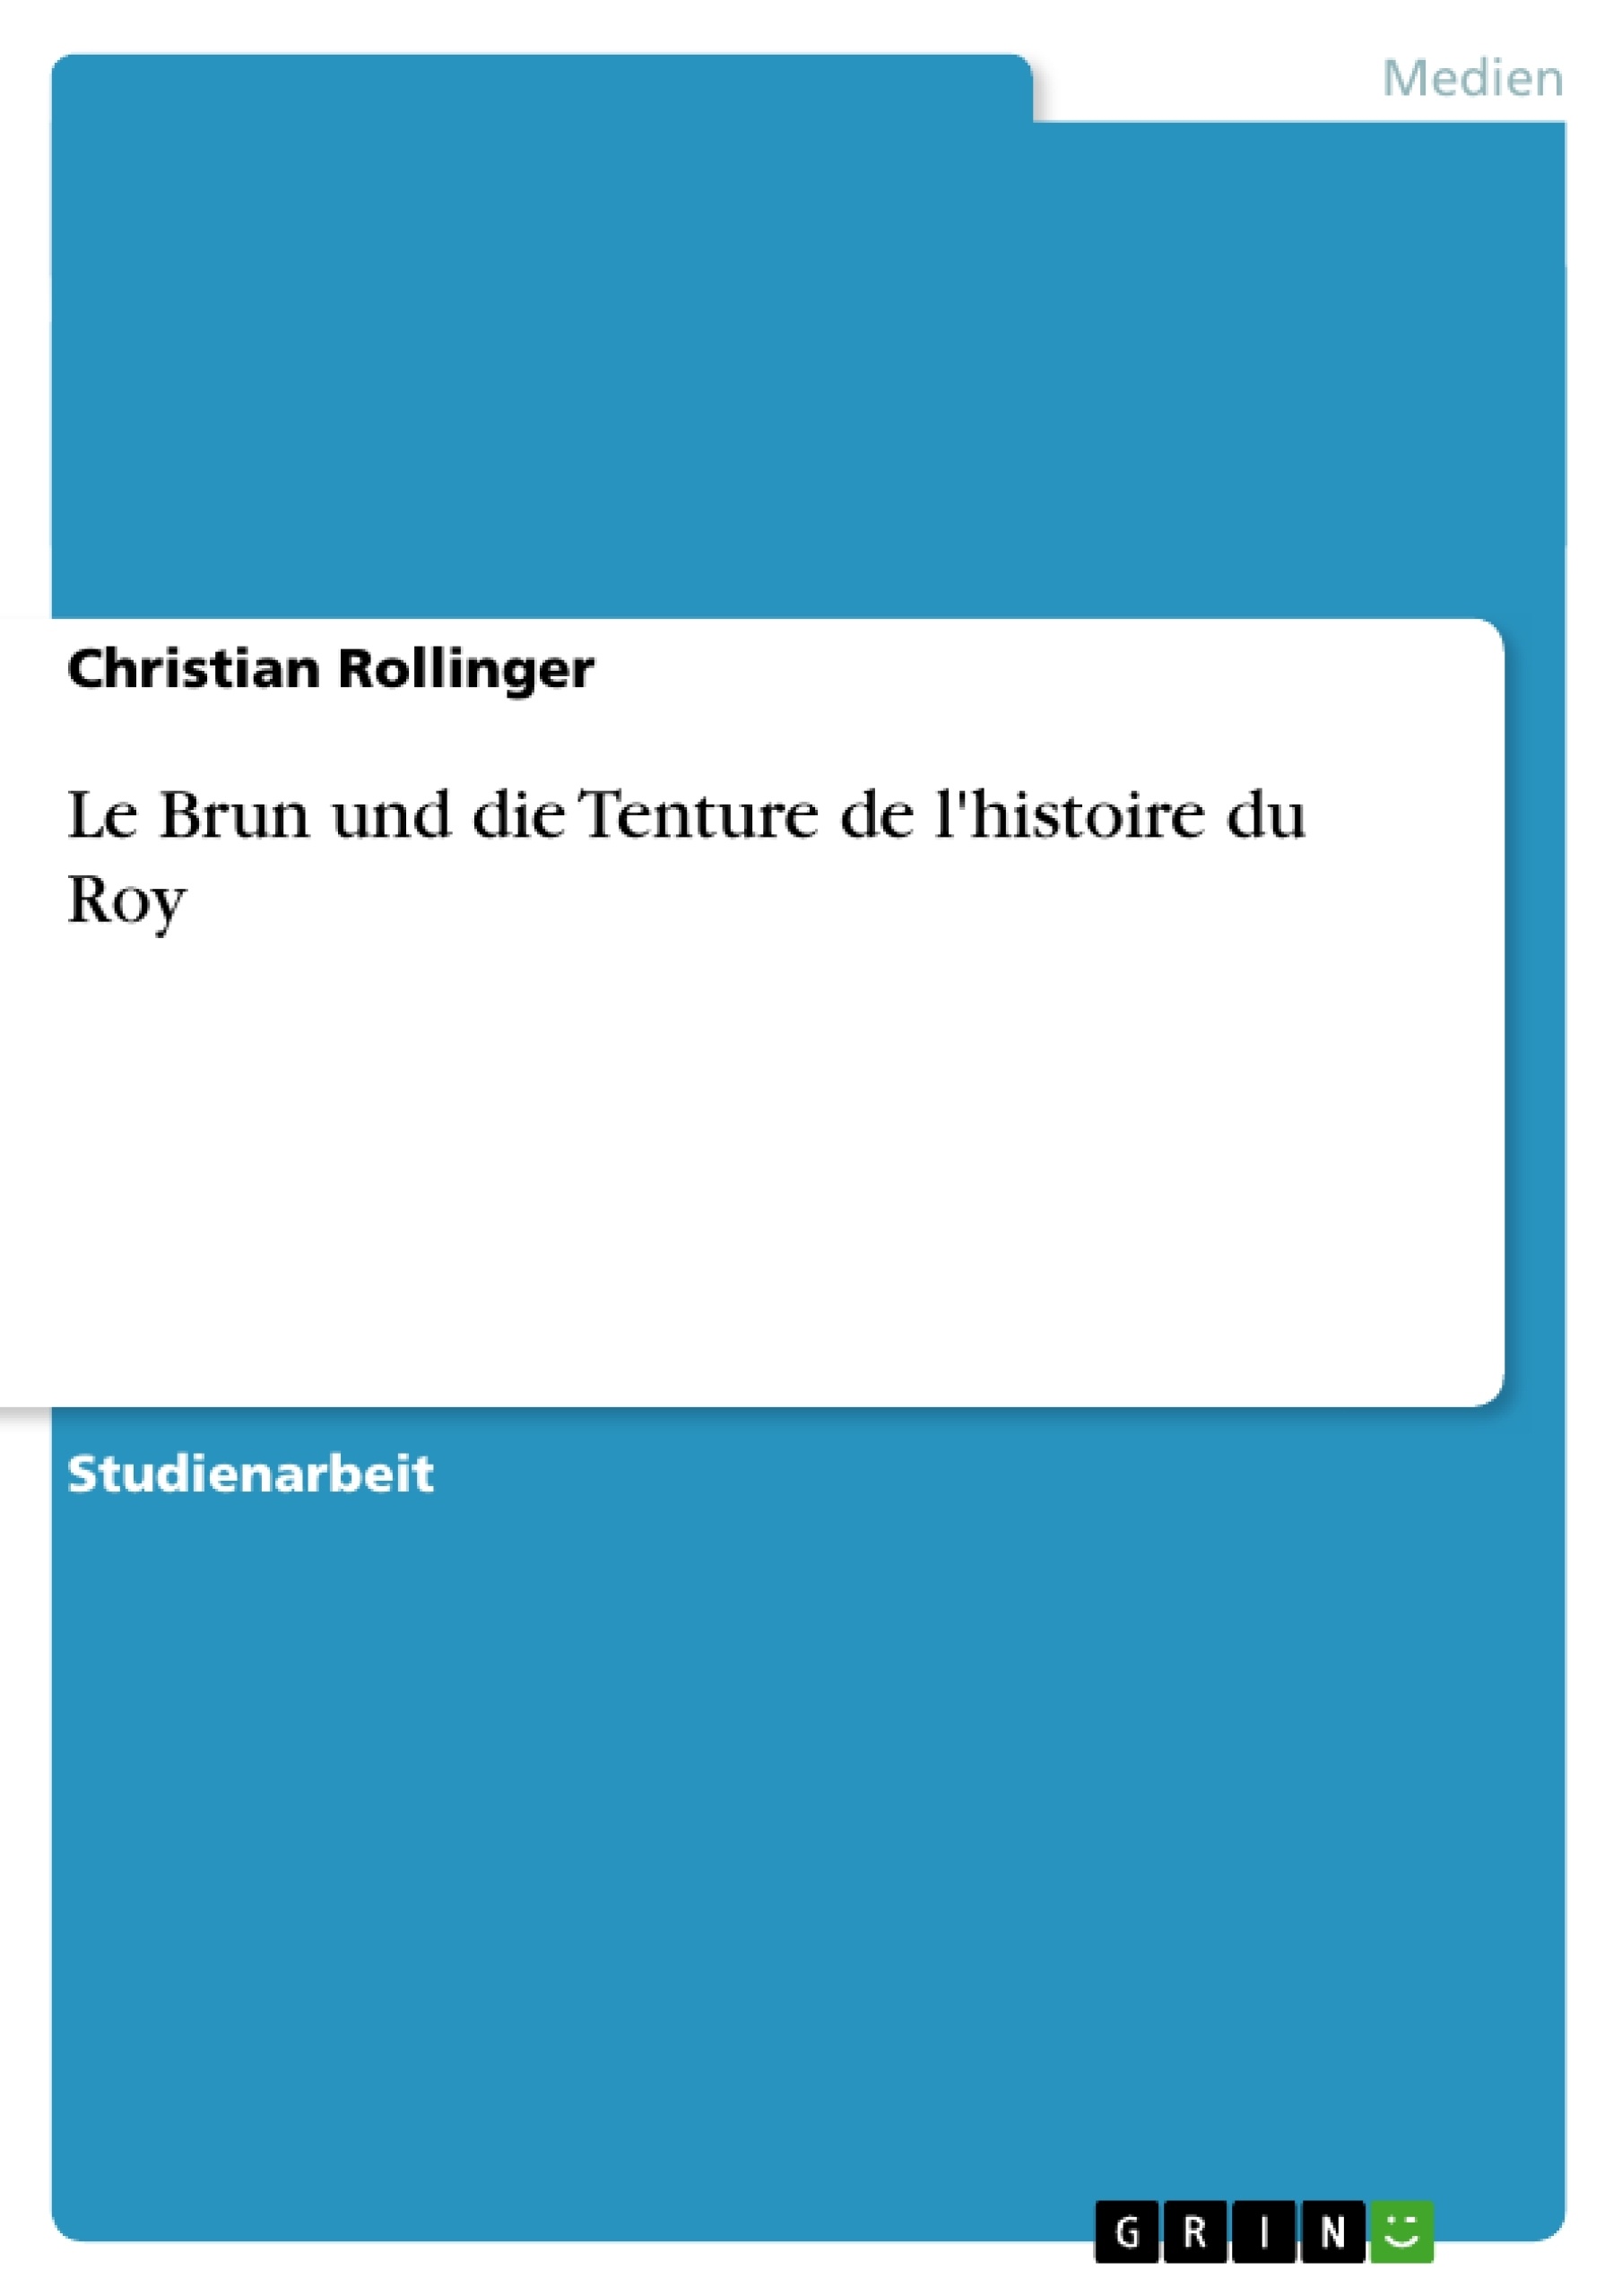 Titre: Le Brun und die Tenture de l'histoire du Roy